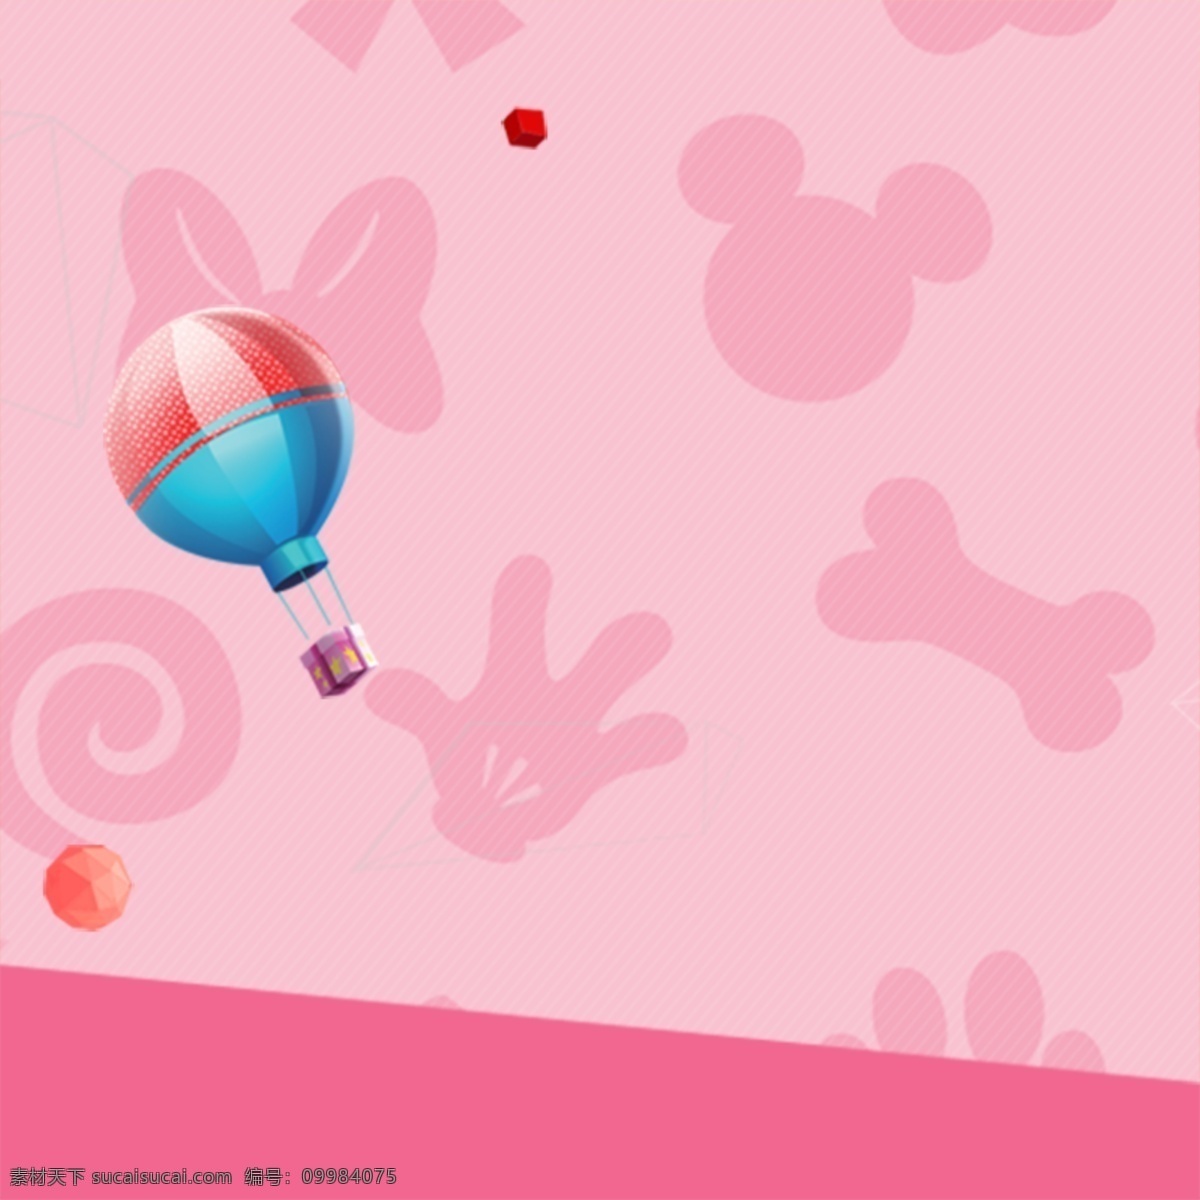 卡通可爱背景 粉色 热气球 卡通图形 可爱背景 卡通背景 儿童